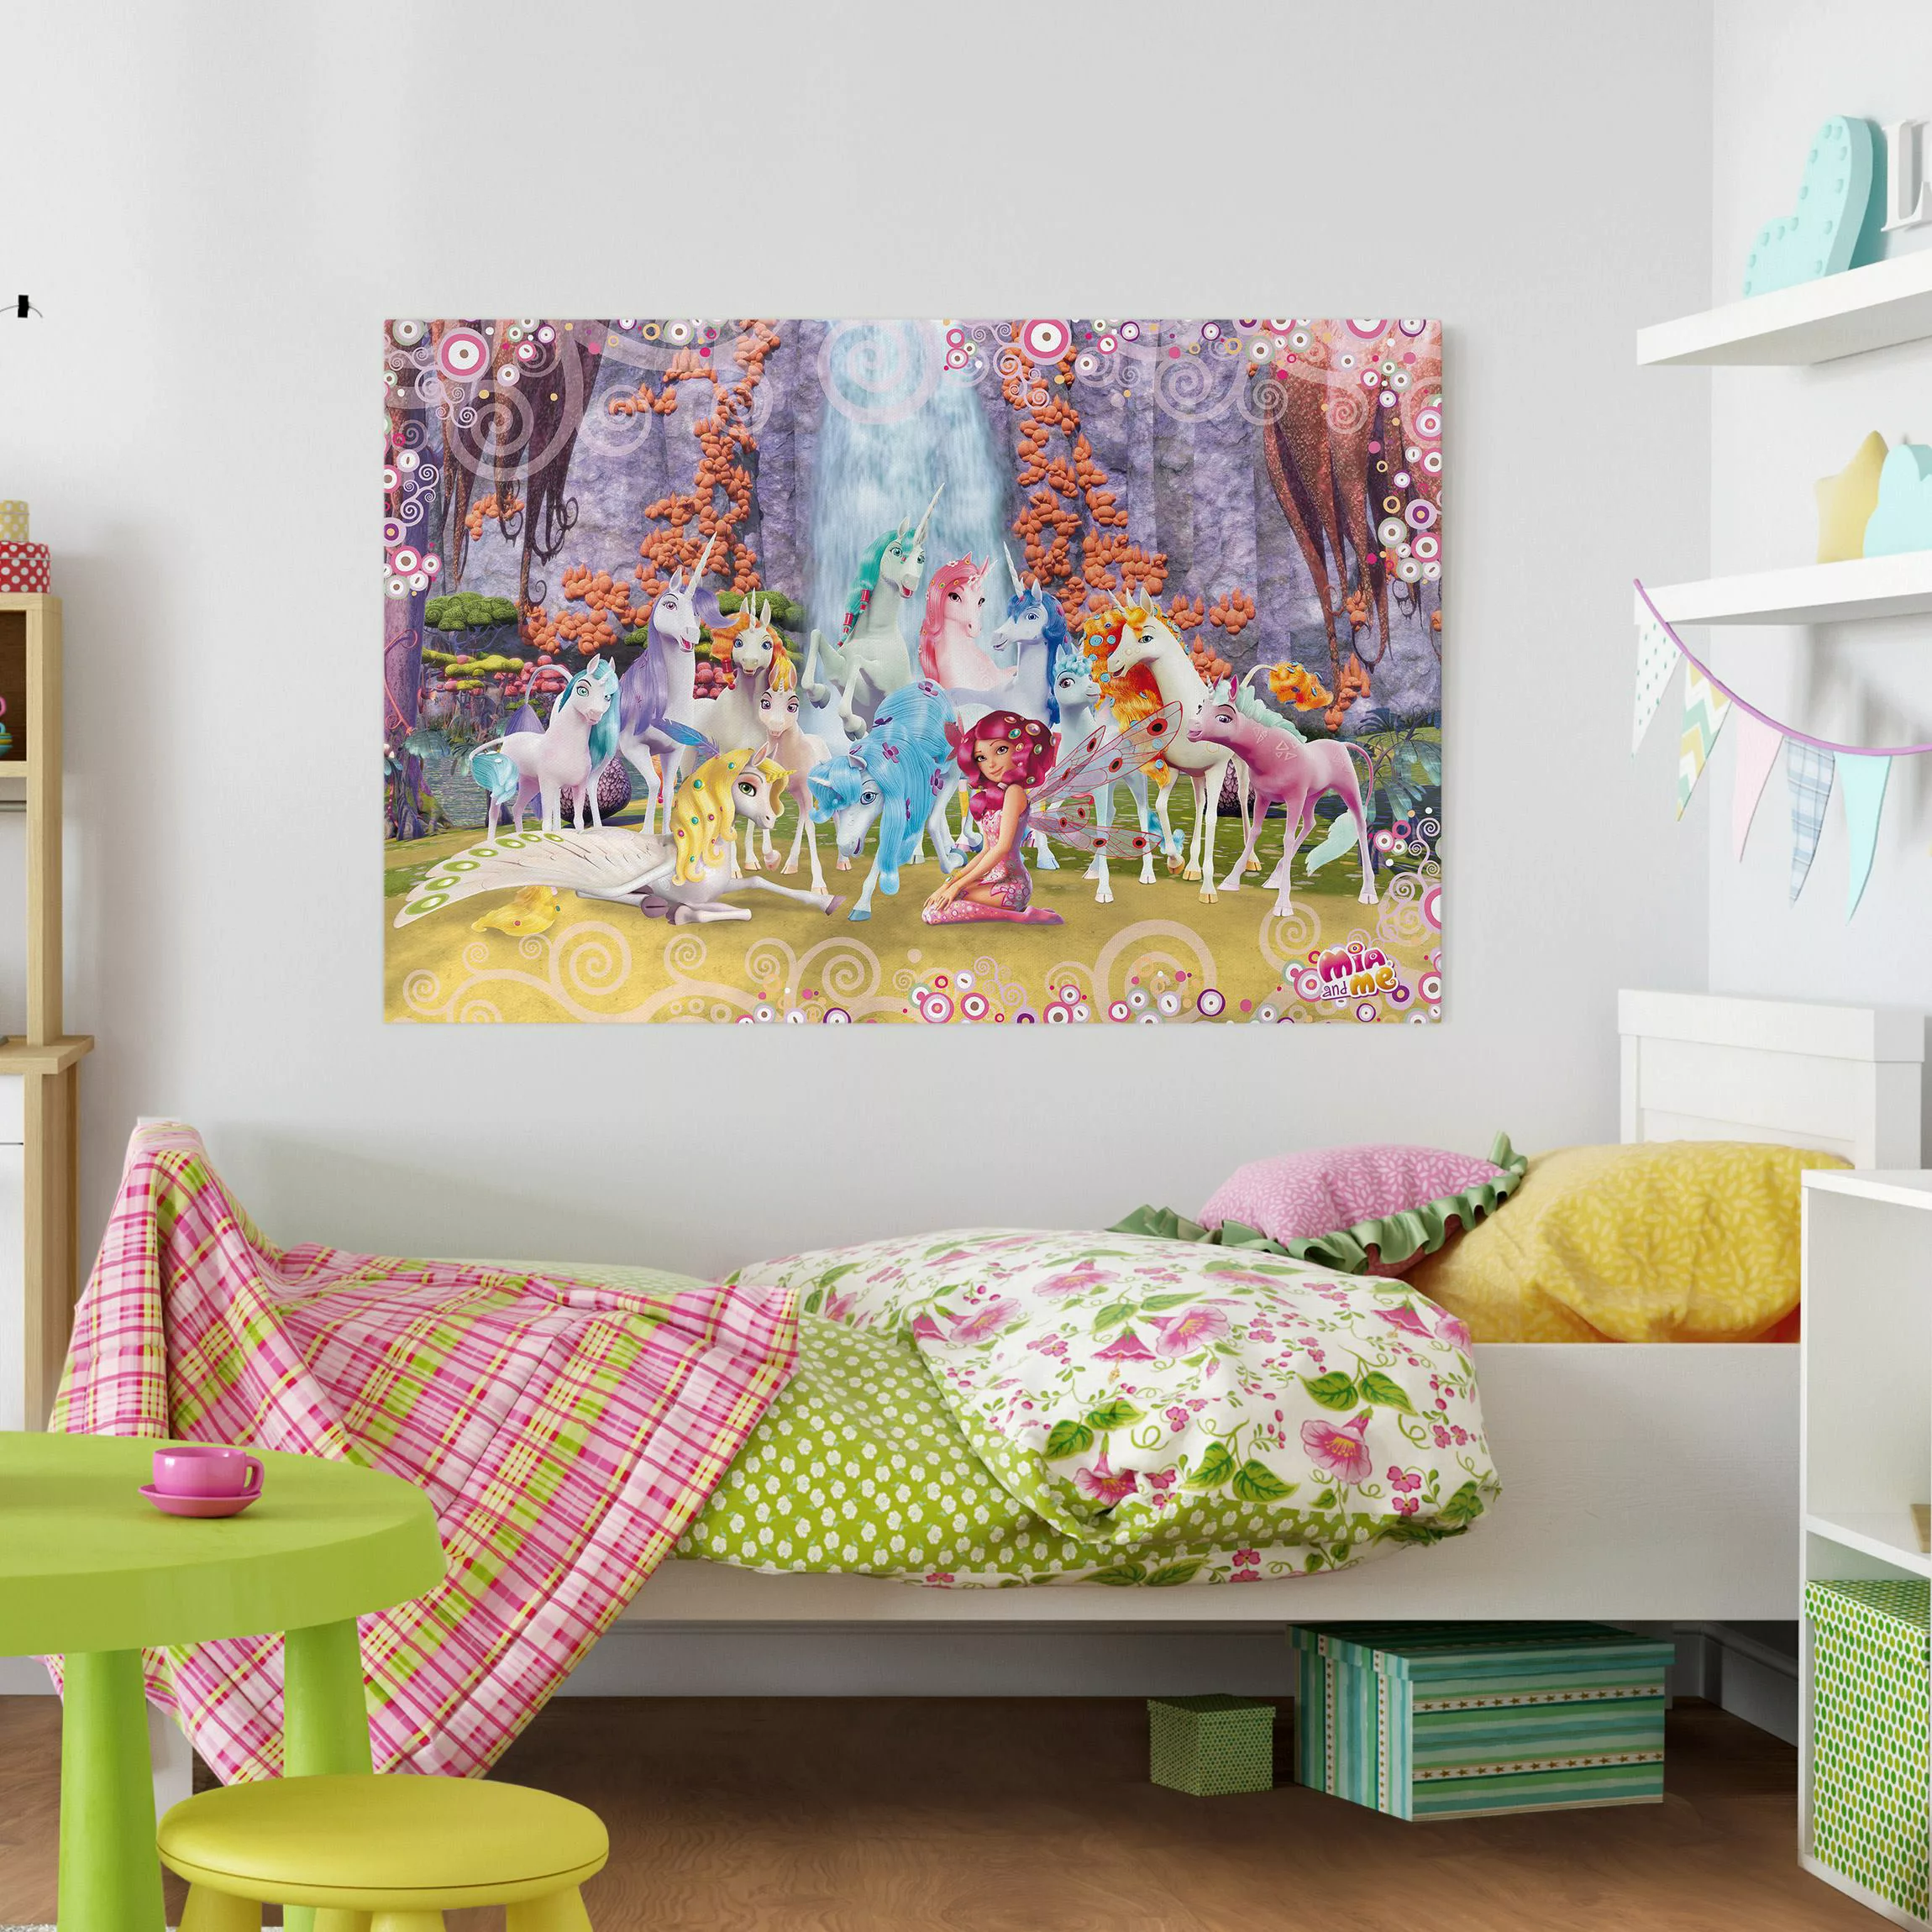 Leinwandbild Kinderzimmer - Querformat Mia and me - Mia und Onchao mit den günstig online kaufen